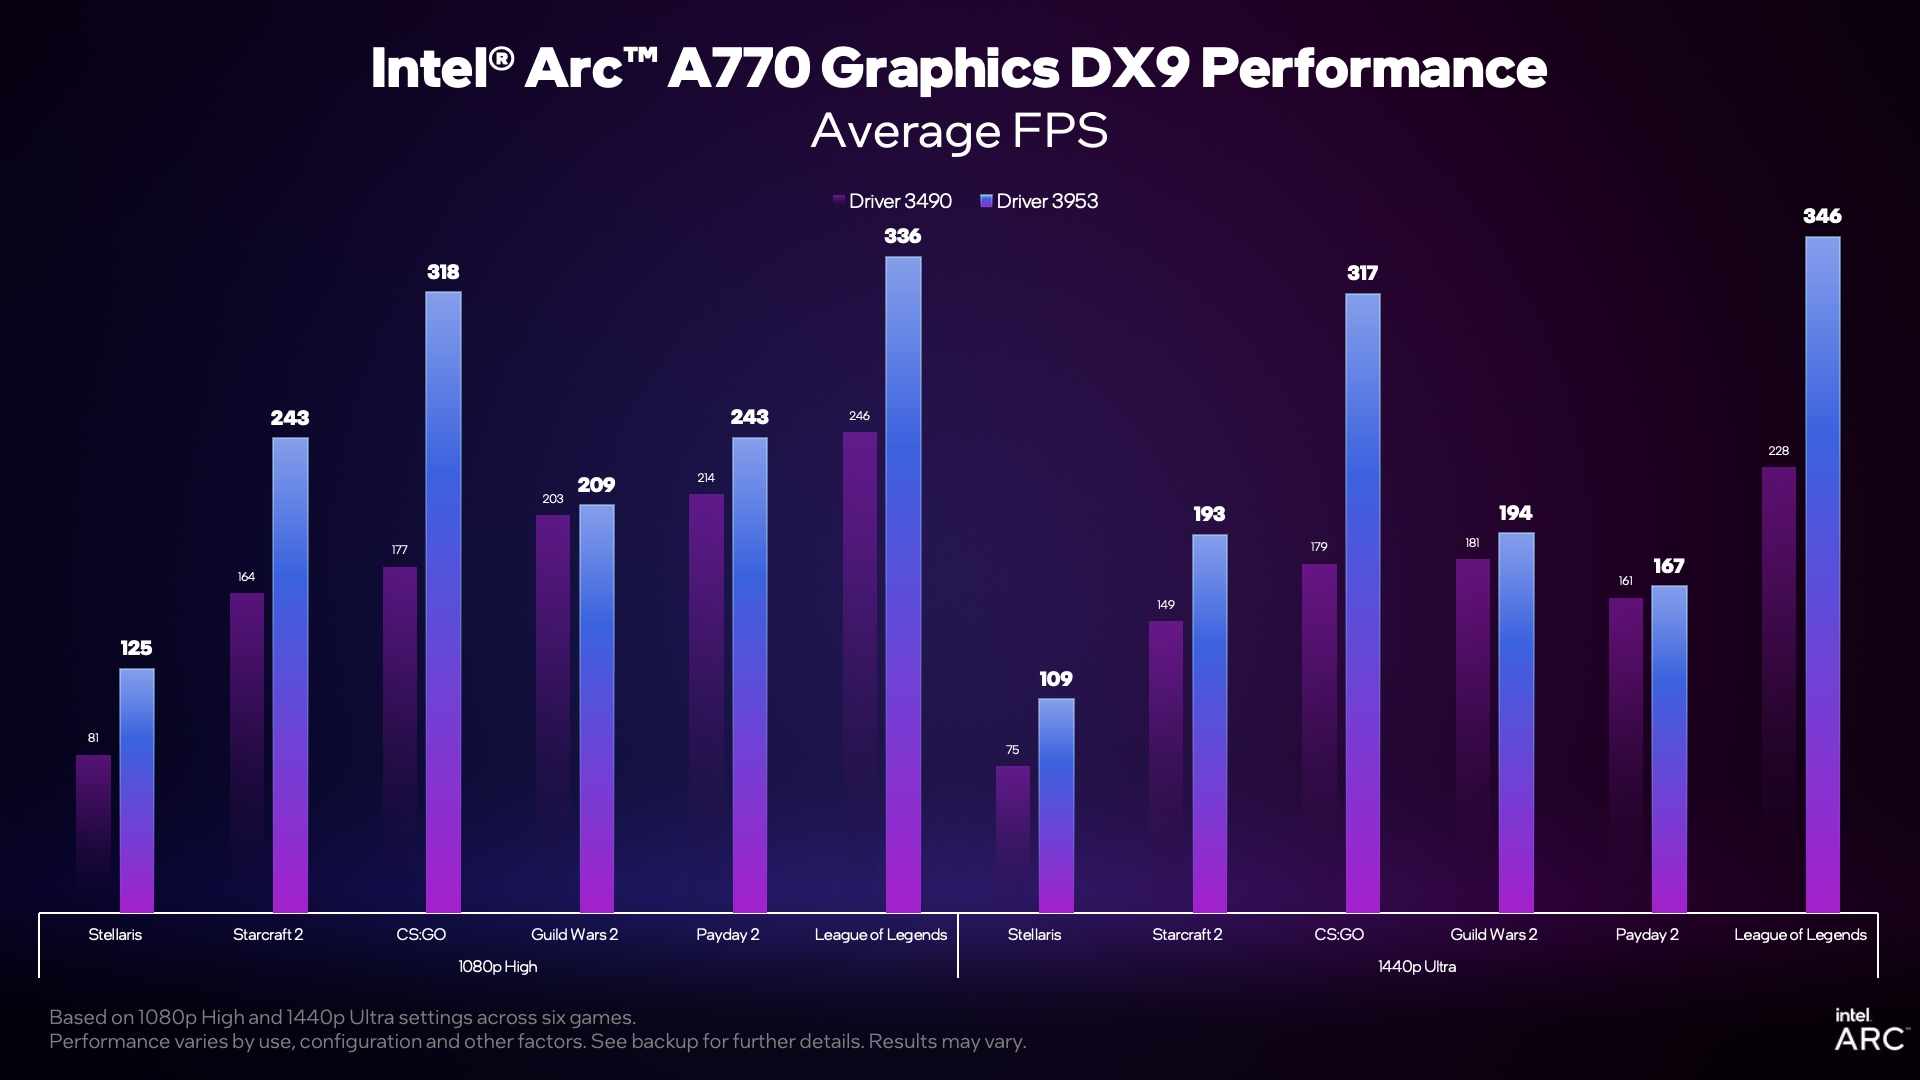 El controlador v3959 de Intel que muestra mejoras en el rendimiento de FPS en varios juegos.